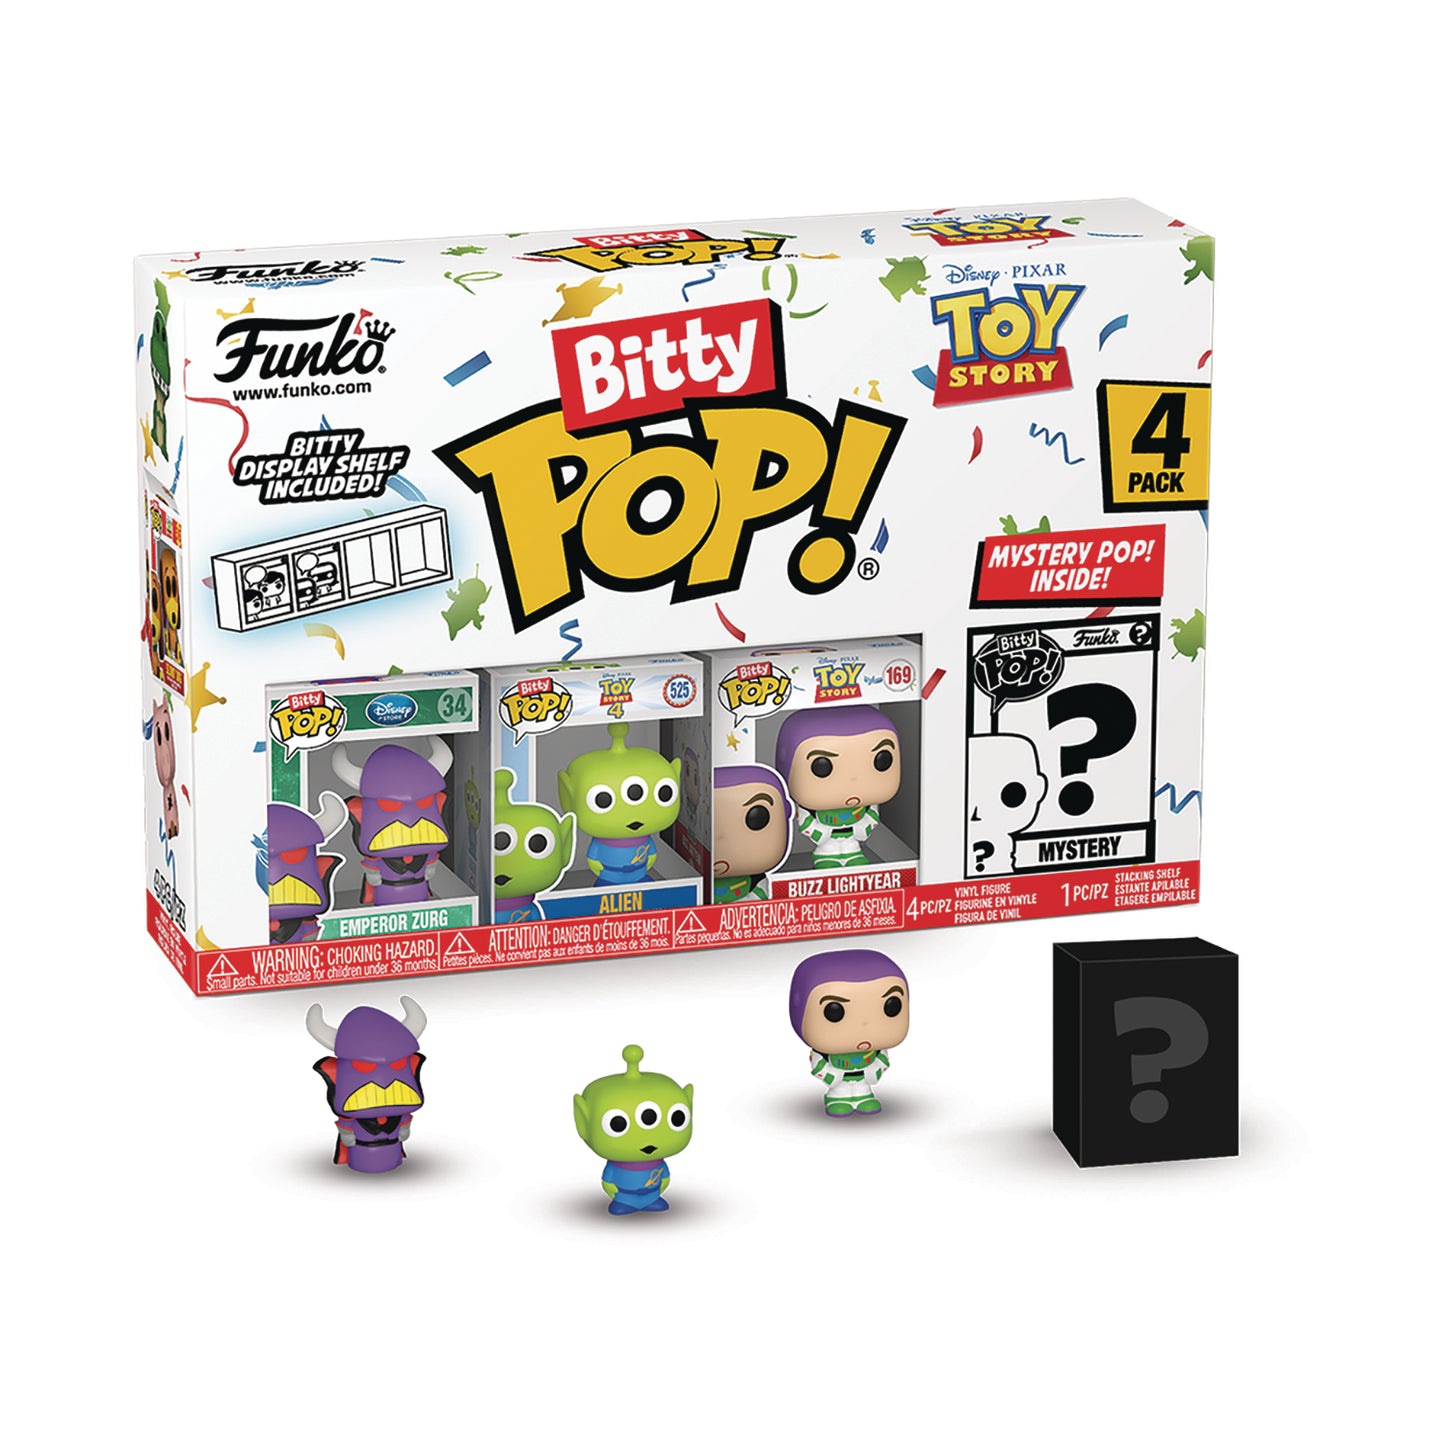 Bitty Pop Toy Story Zurg 4pk Figure